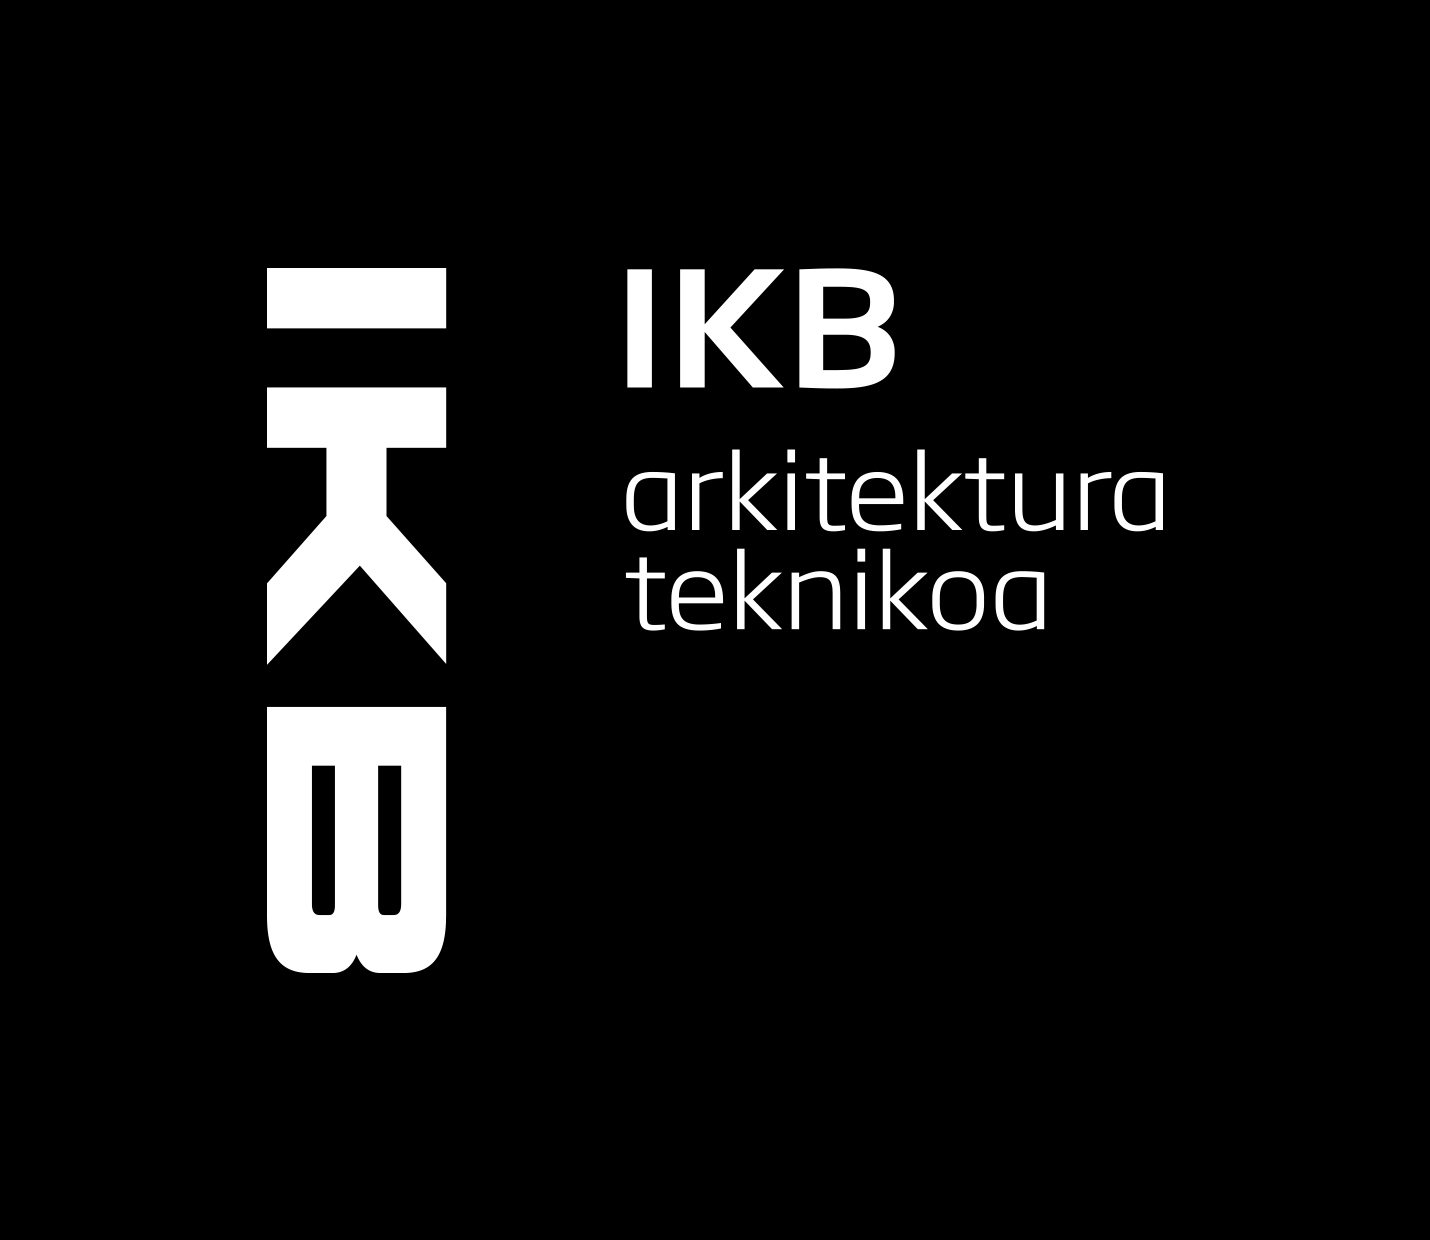 IKB Arkitektura Teknikoa